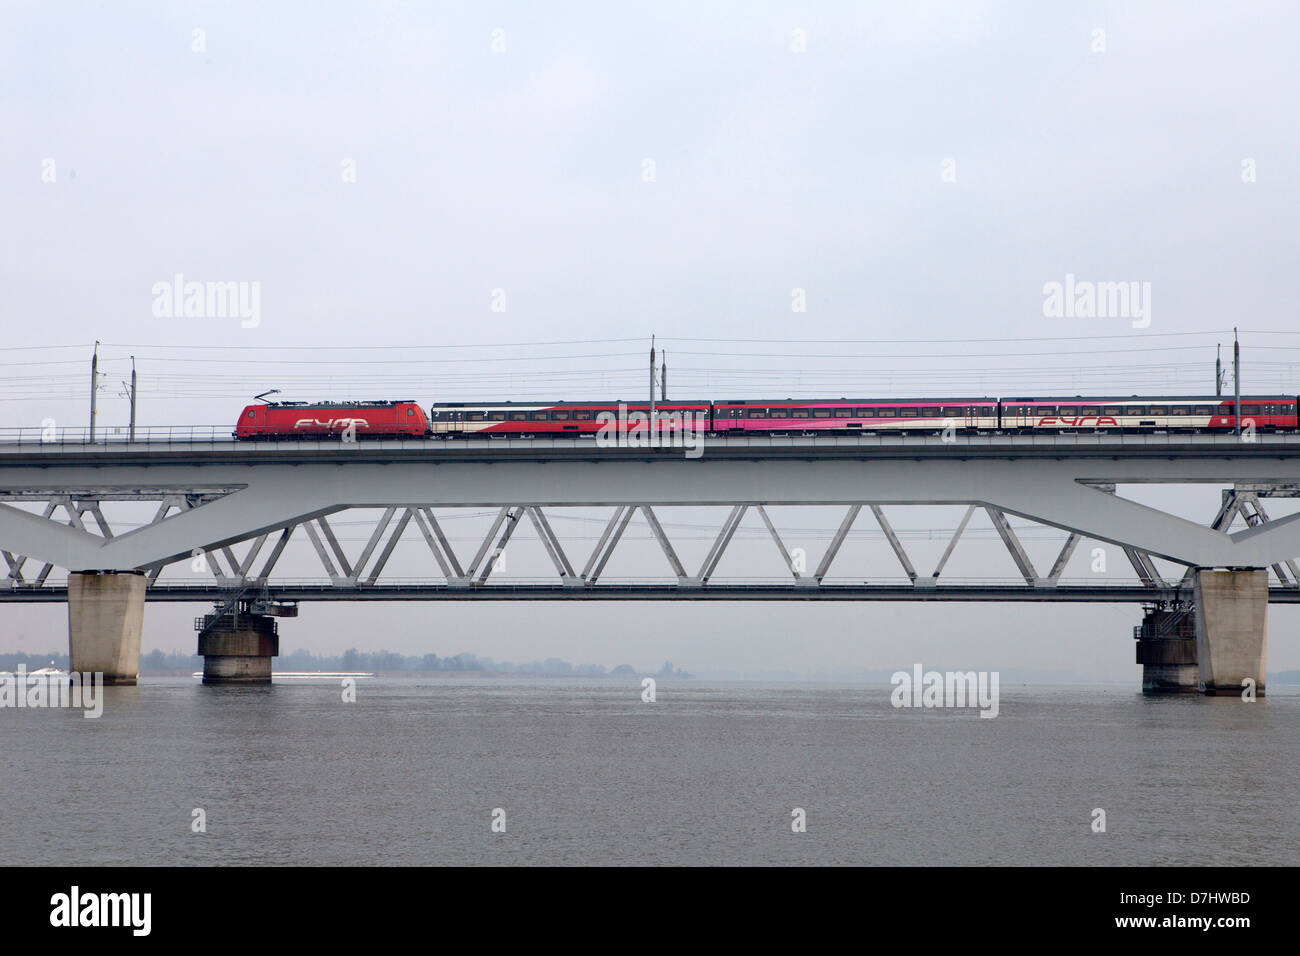 (train) Bridge over the river 'Maas' in dordrecht (Moerdijkbrug) Stock Photo